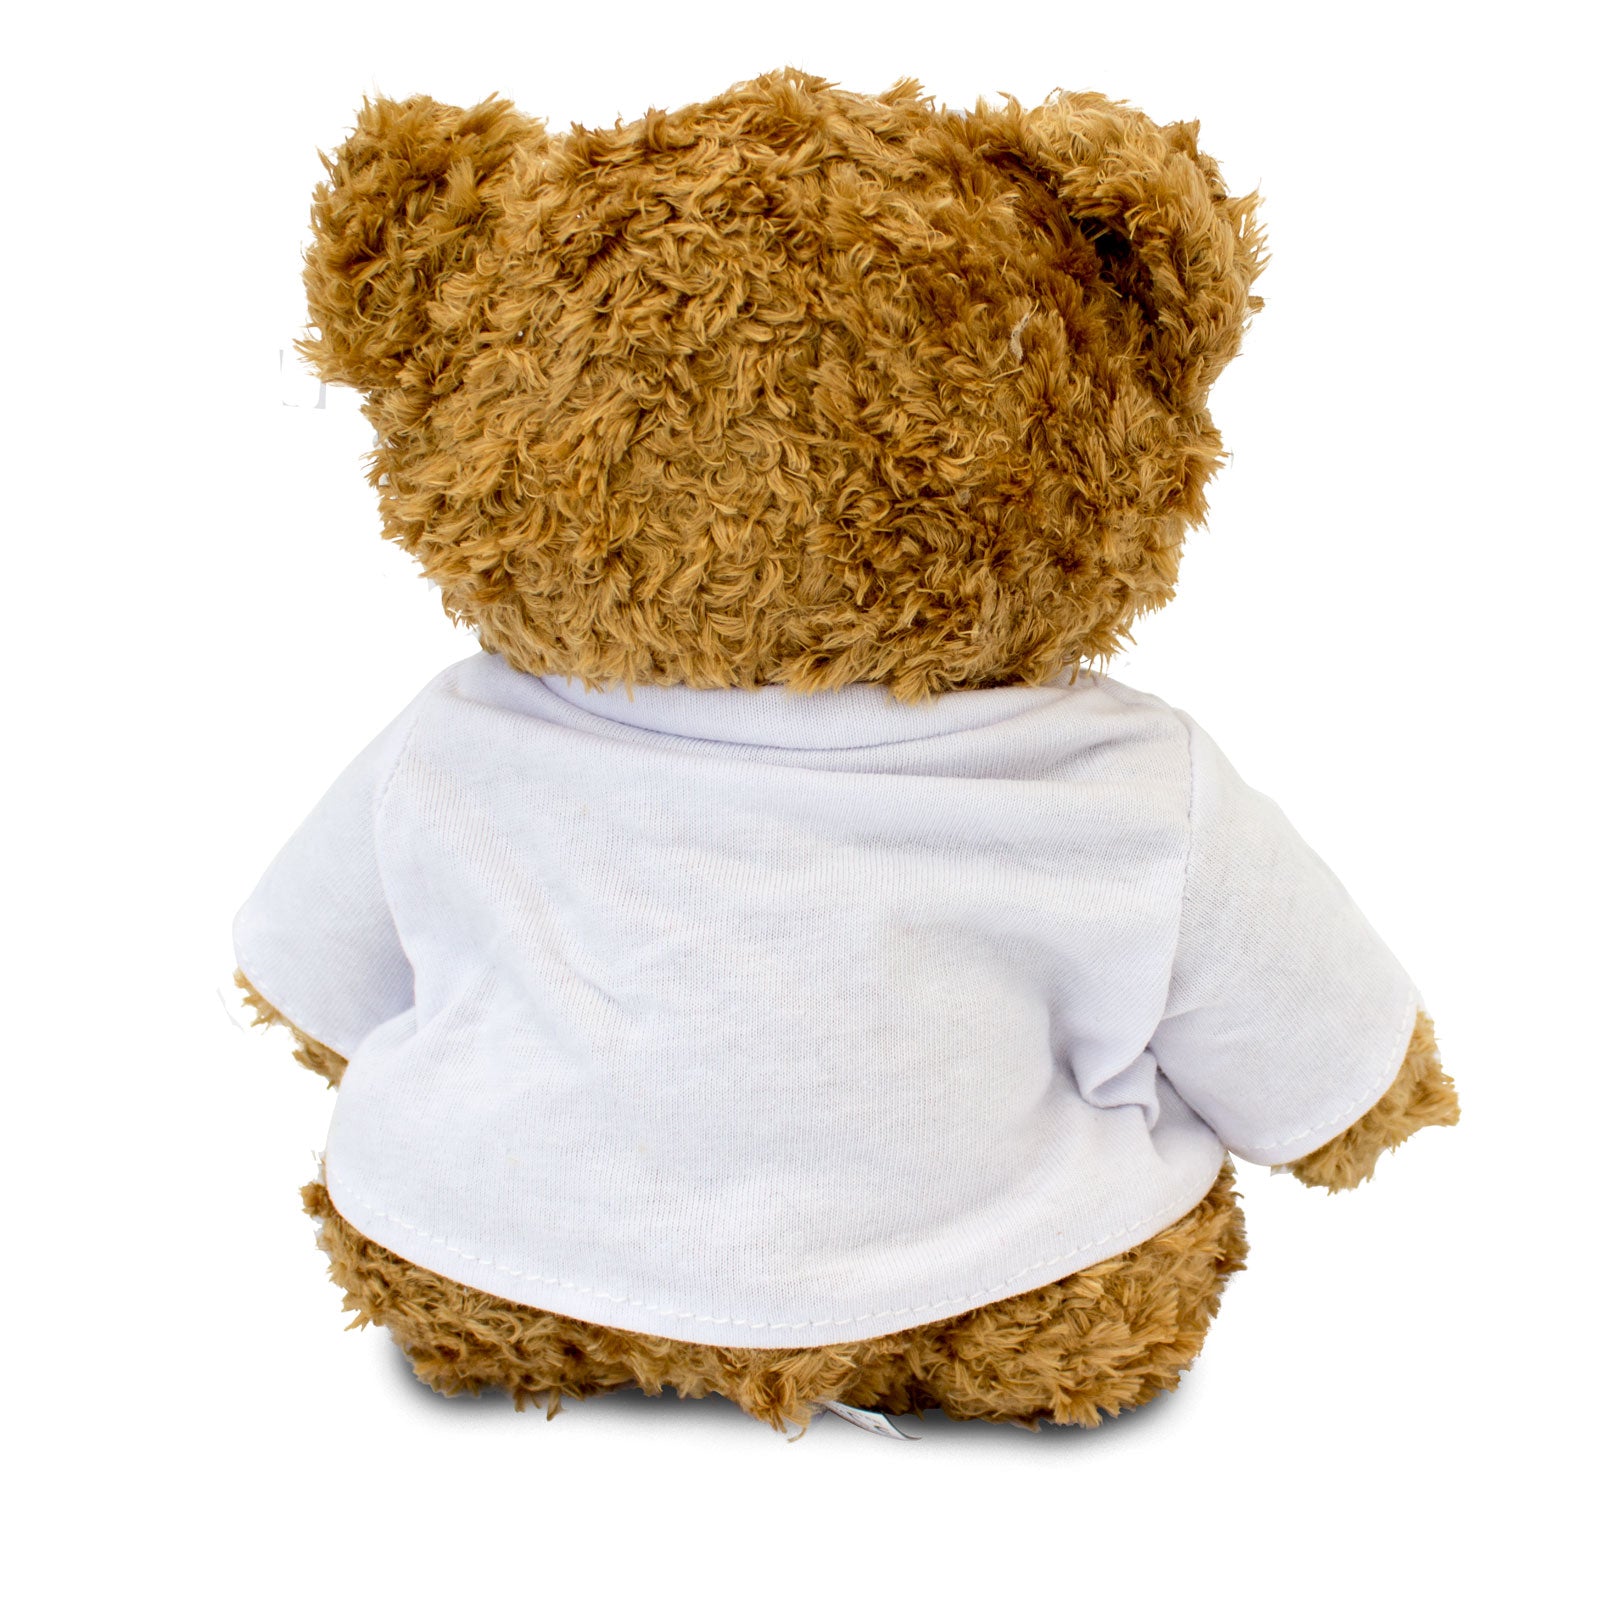 Get Well Soon Leila - Teddy Bear